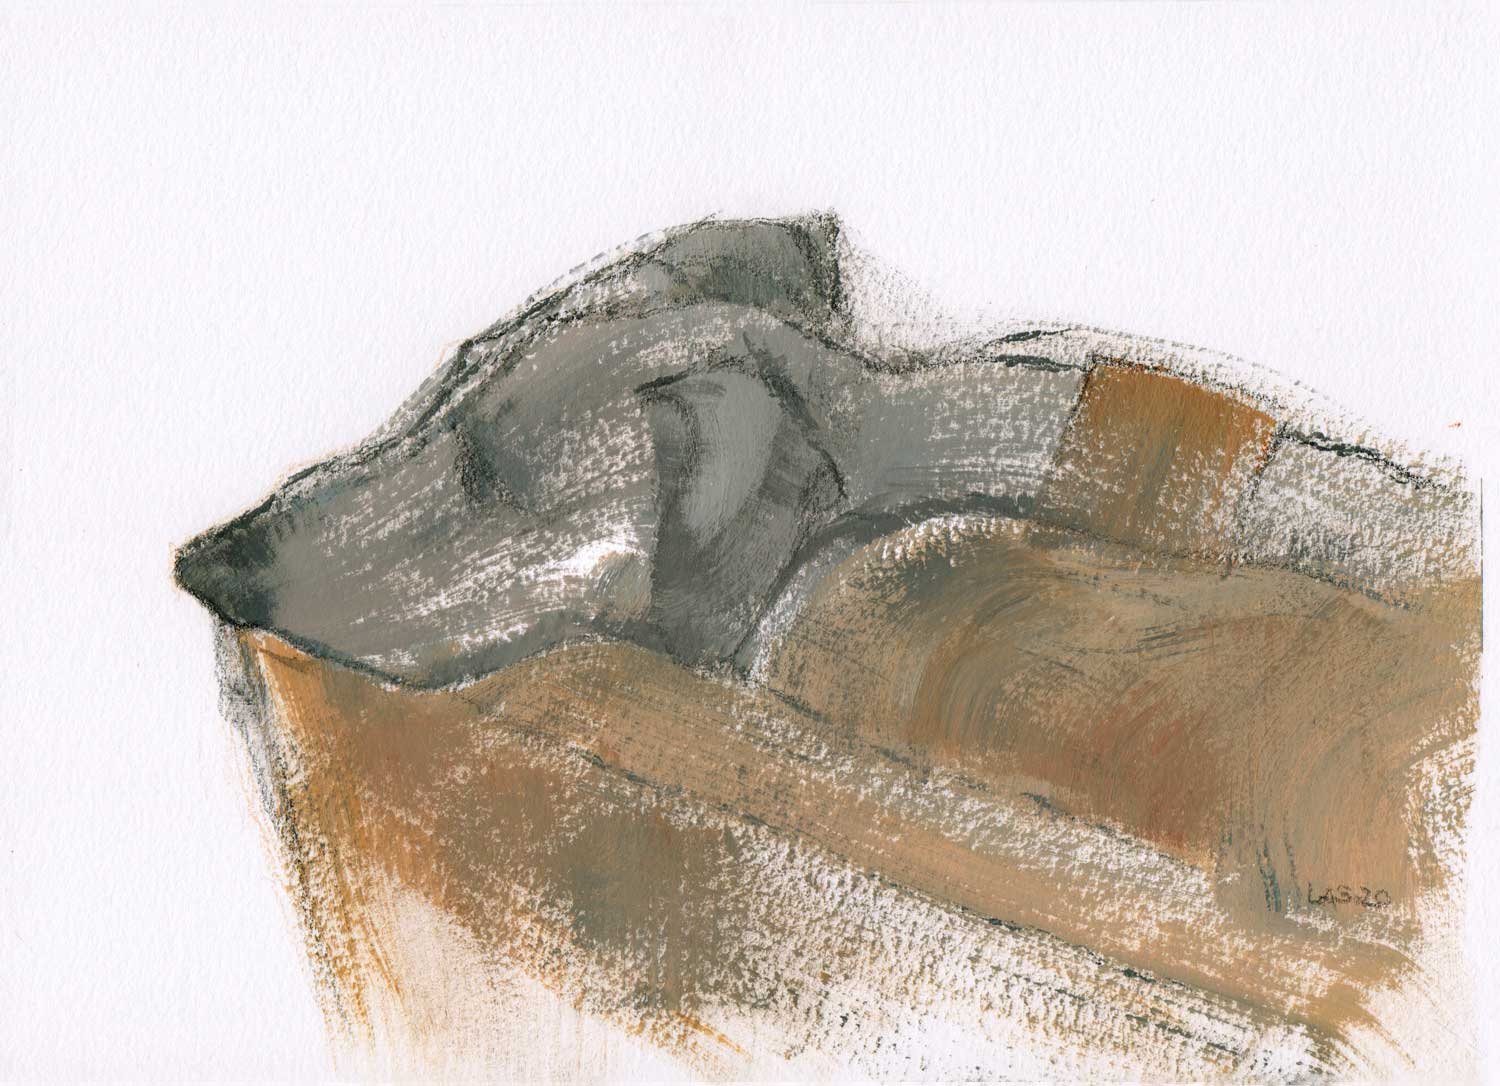 Grey Lurcher on Tan Sofa